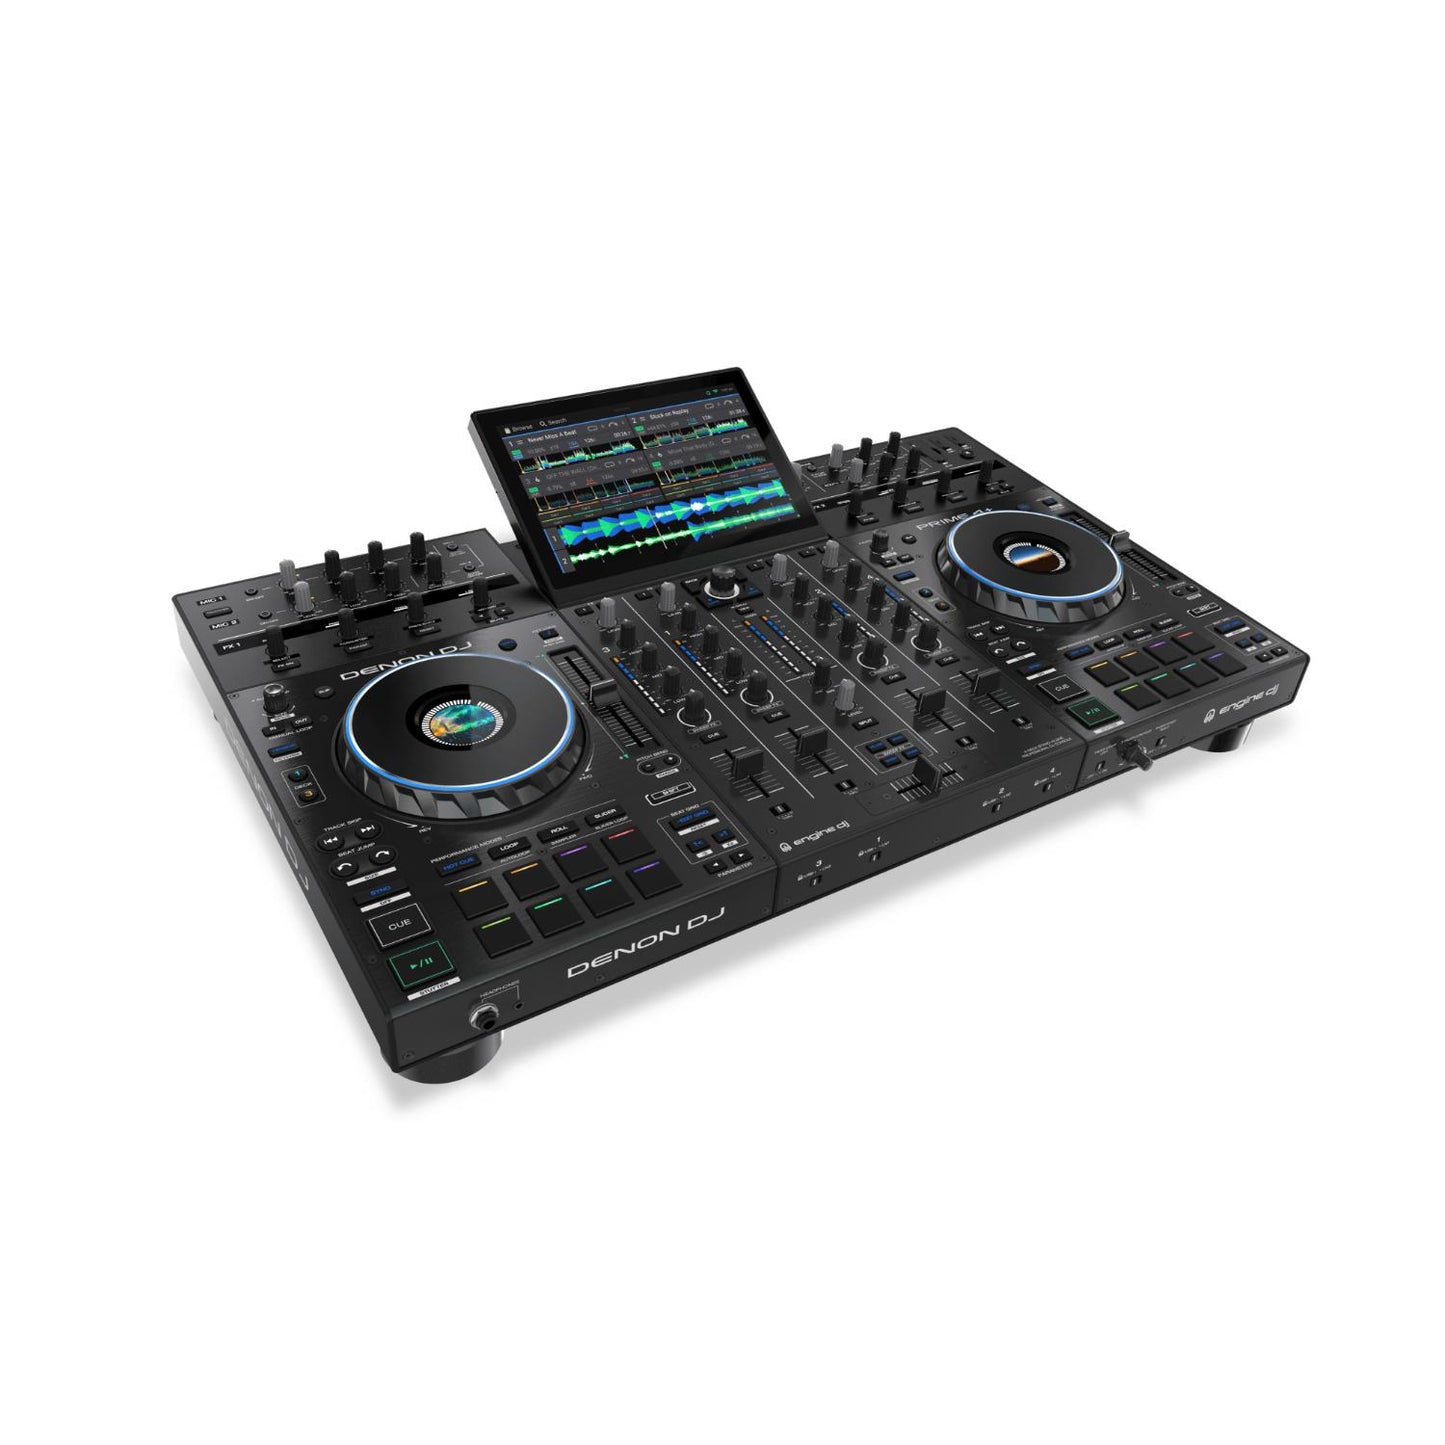 Sistema Pro 4 Deck de DJ PRIME4 PLUS DENON